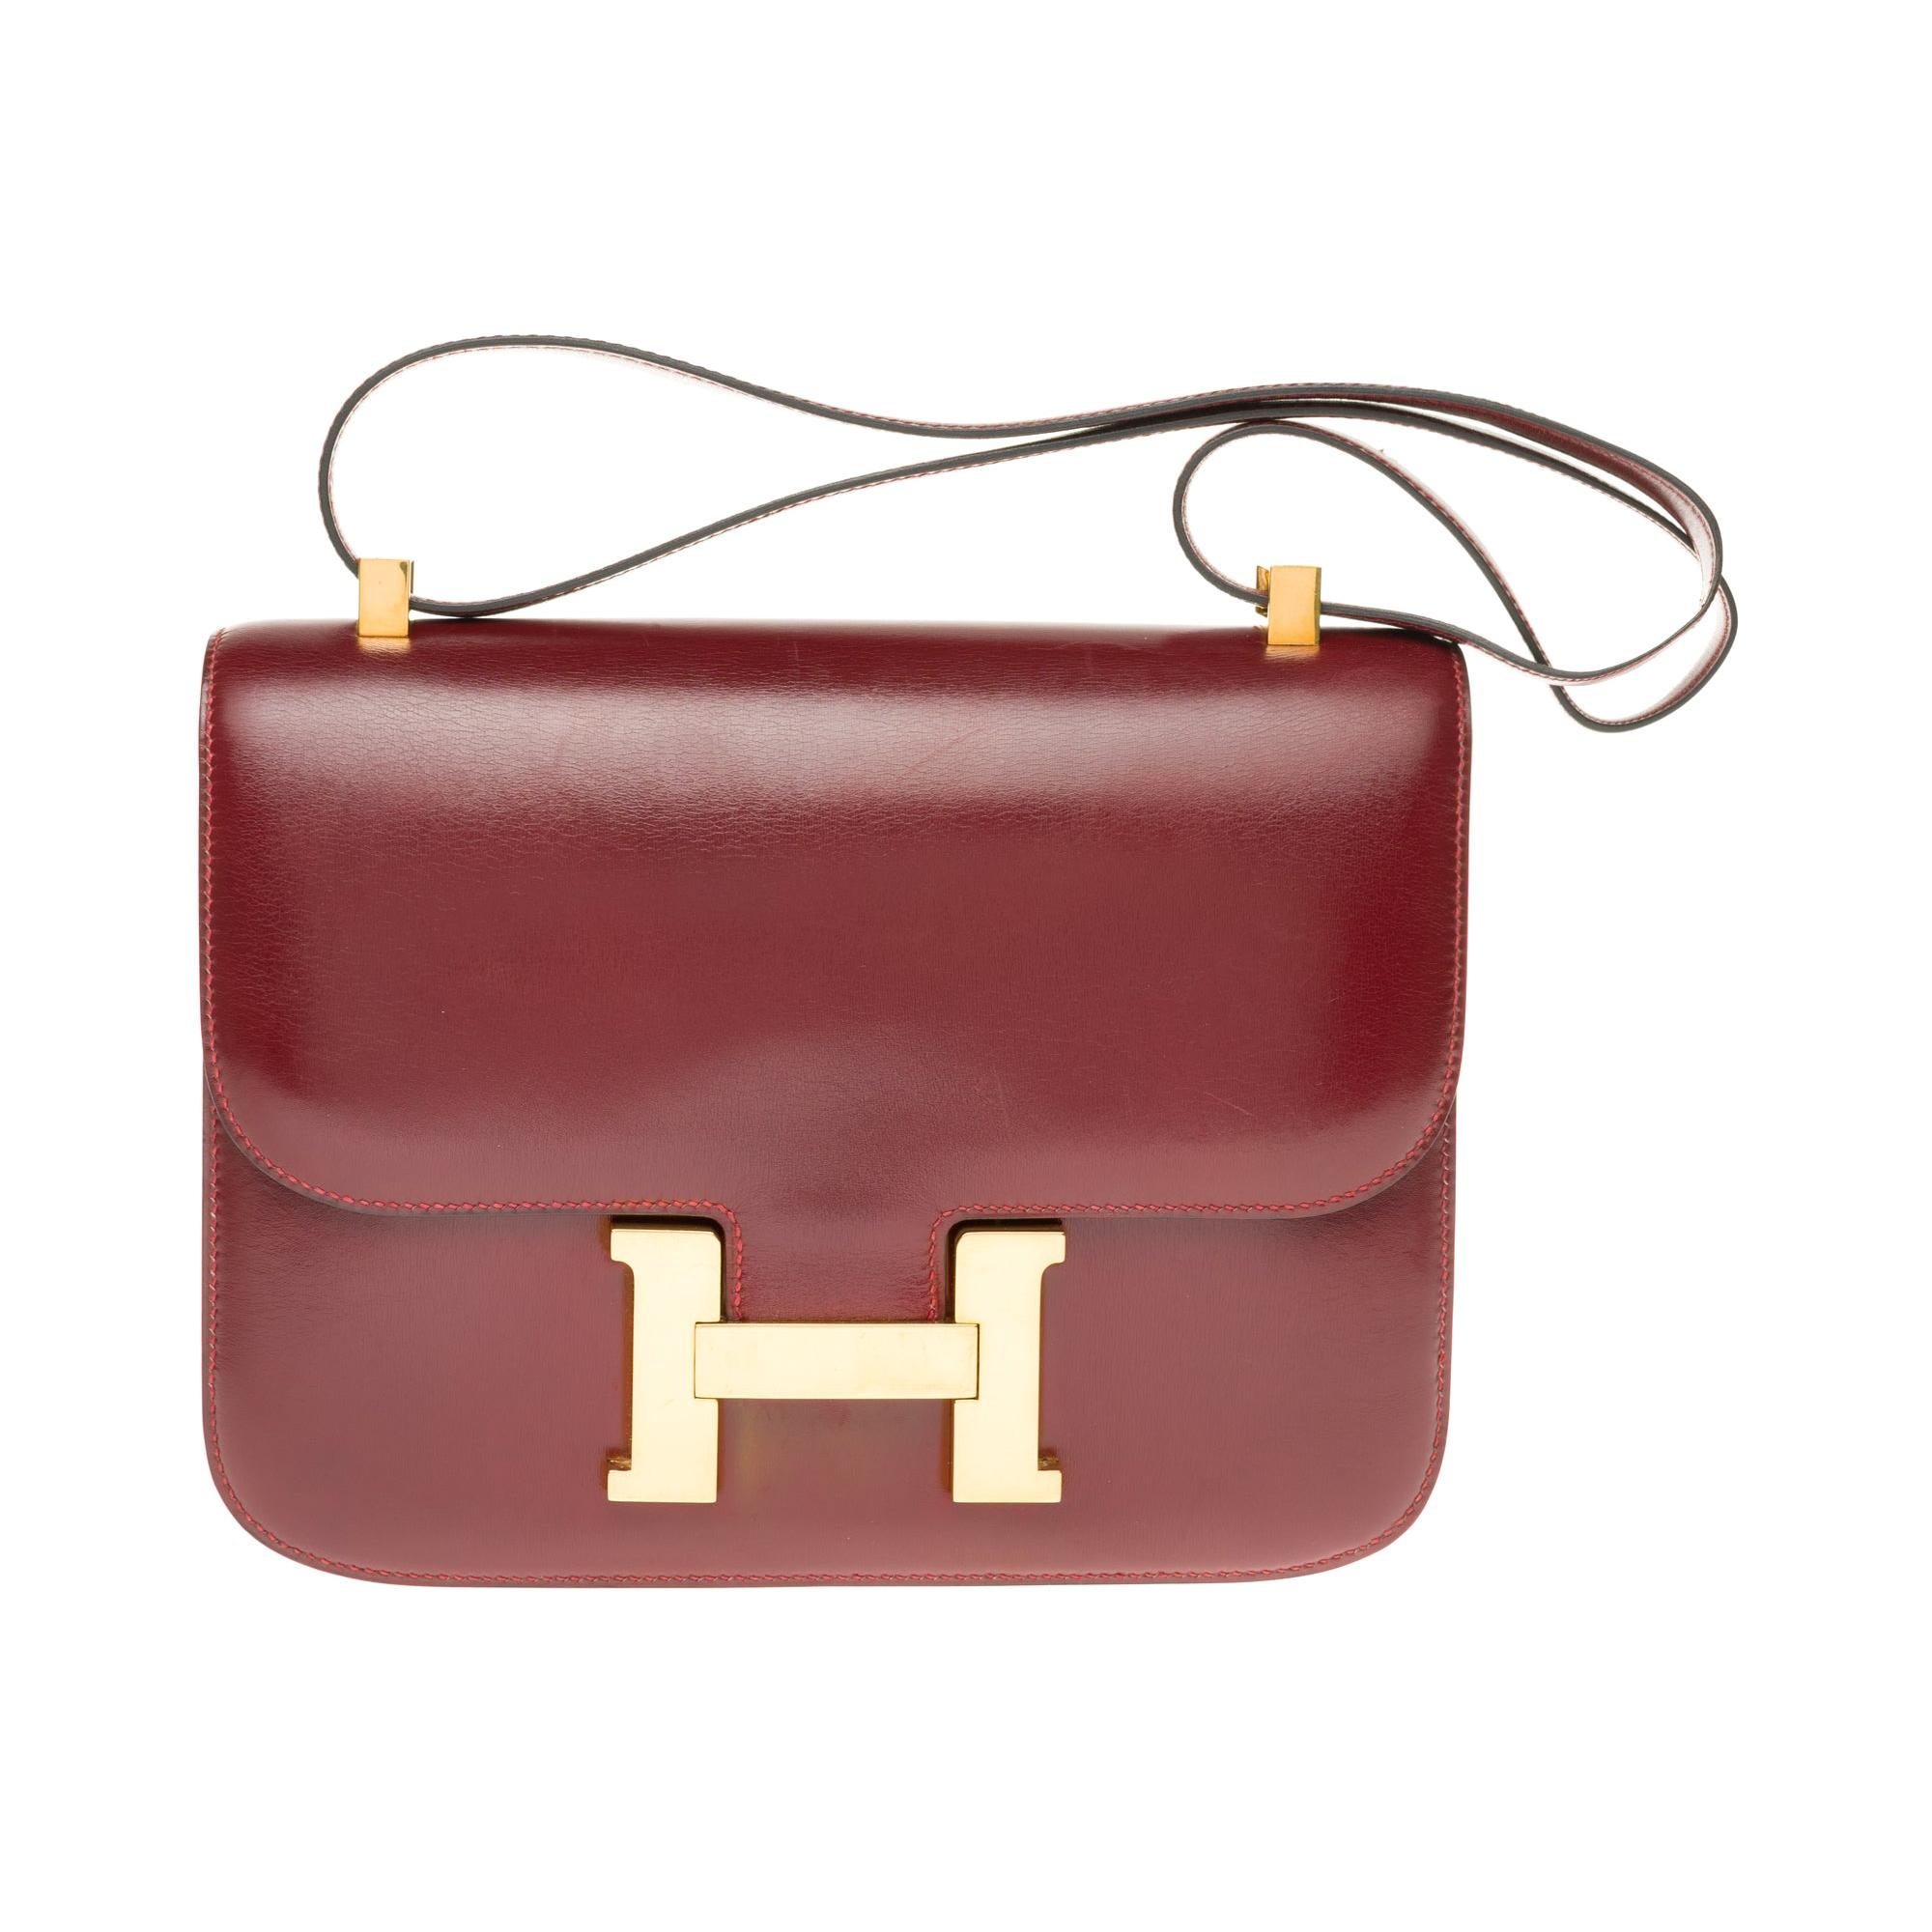 Hermes Constance 23 shoulder bag in burgundy calfskin with gold hardware !